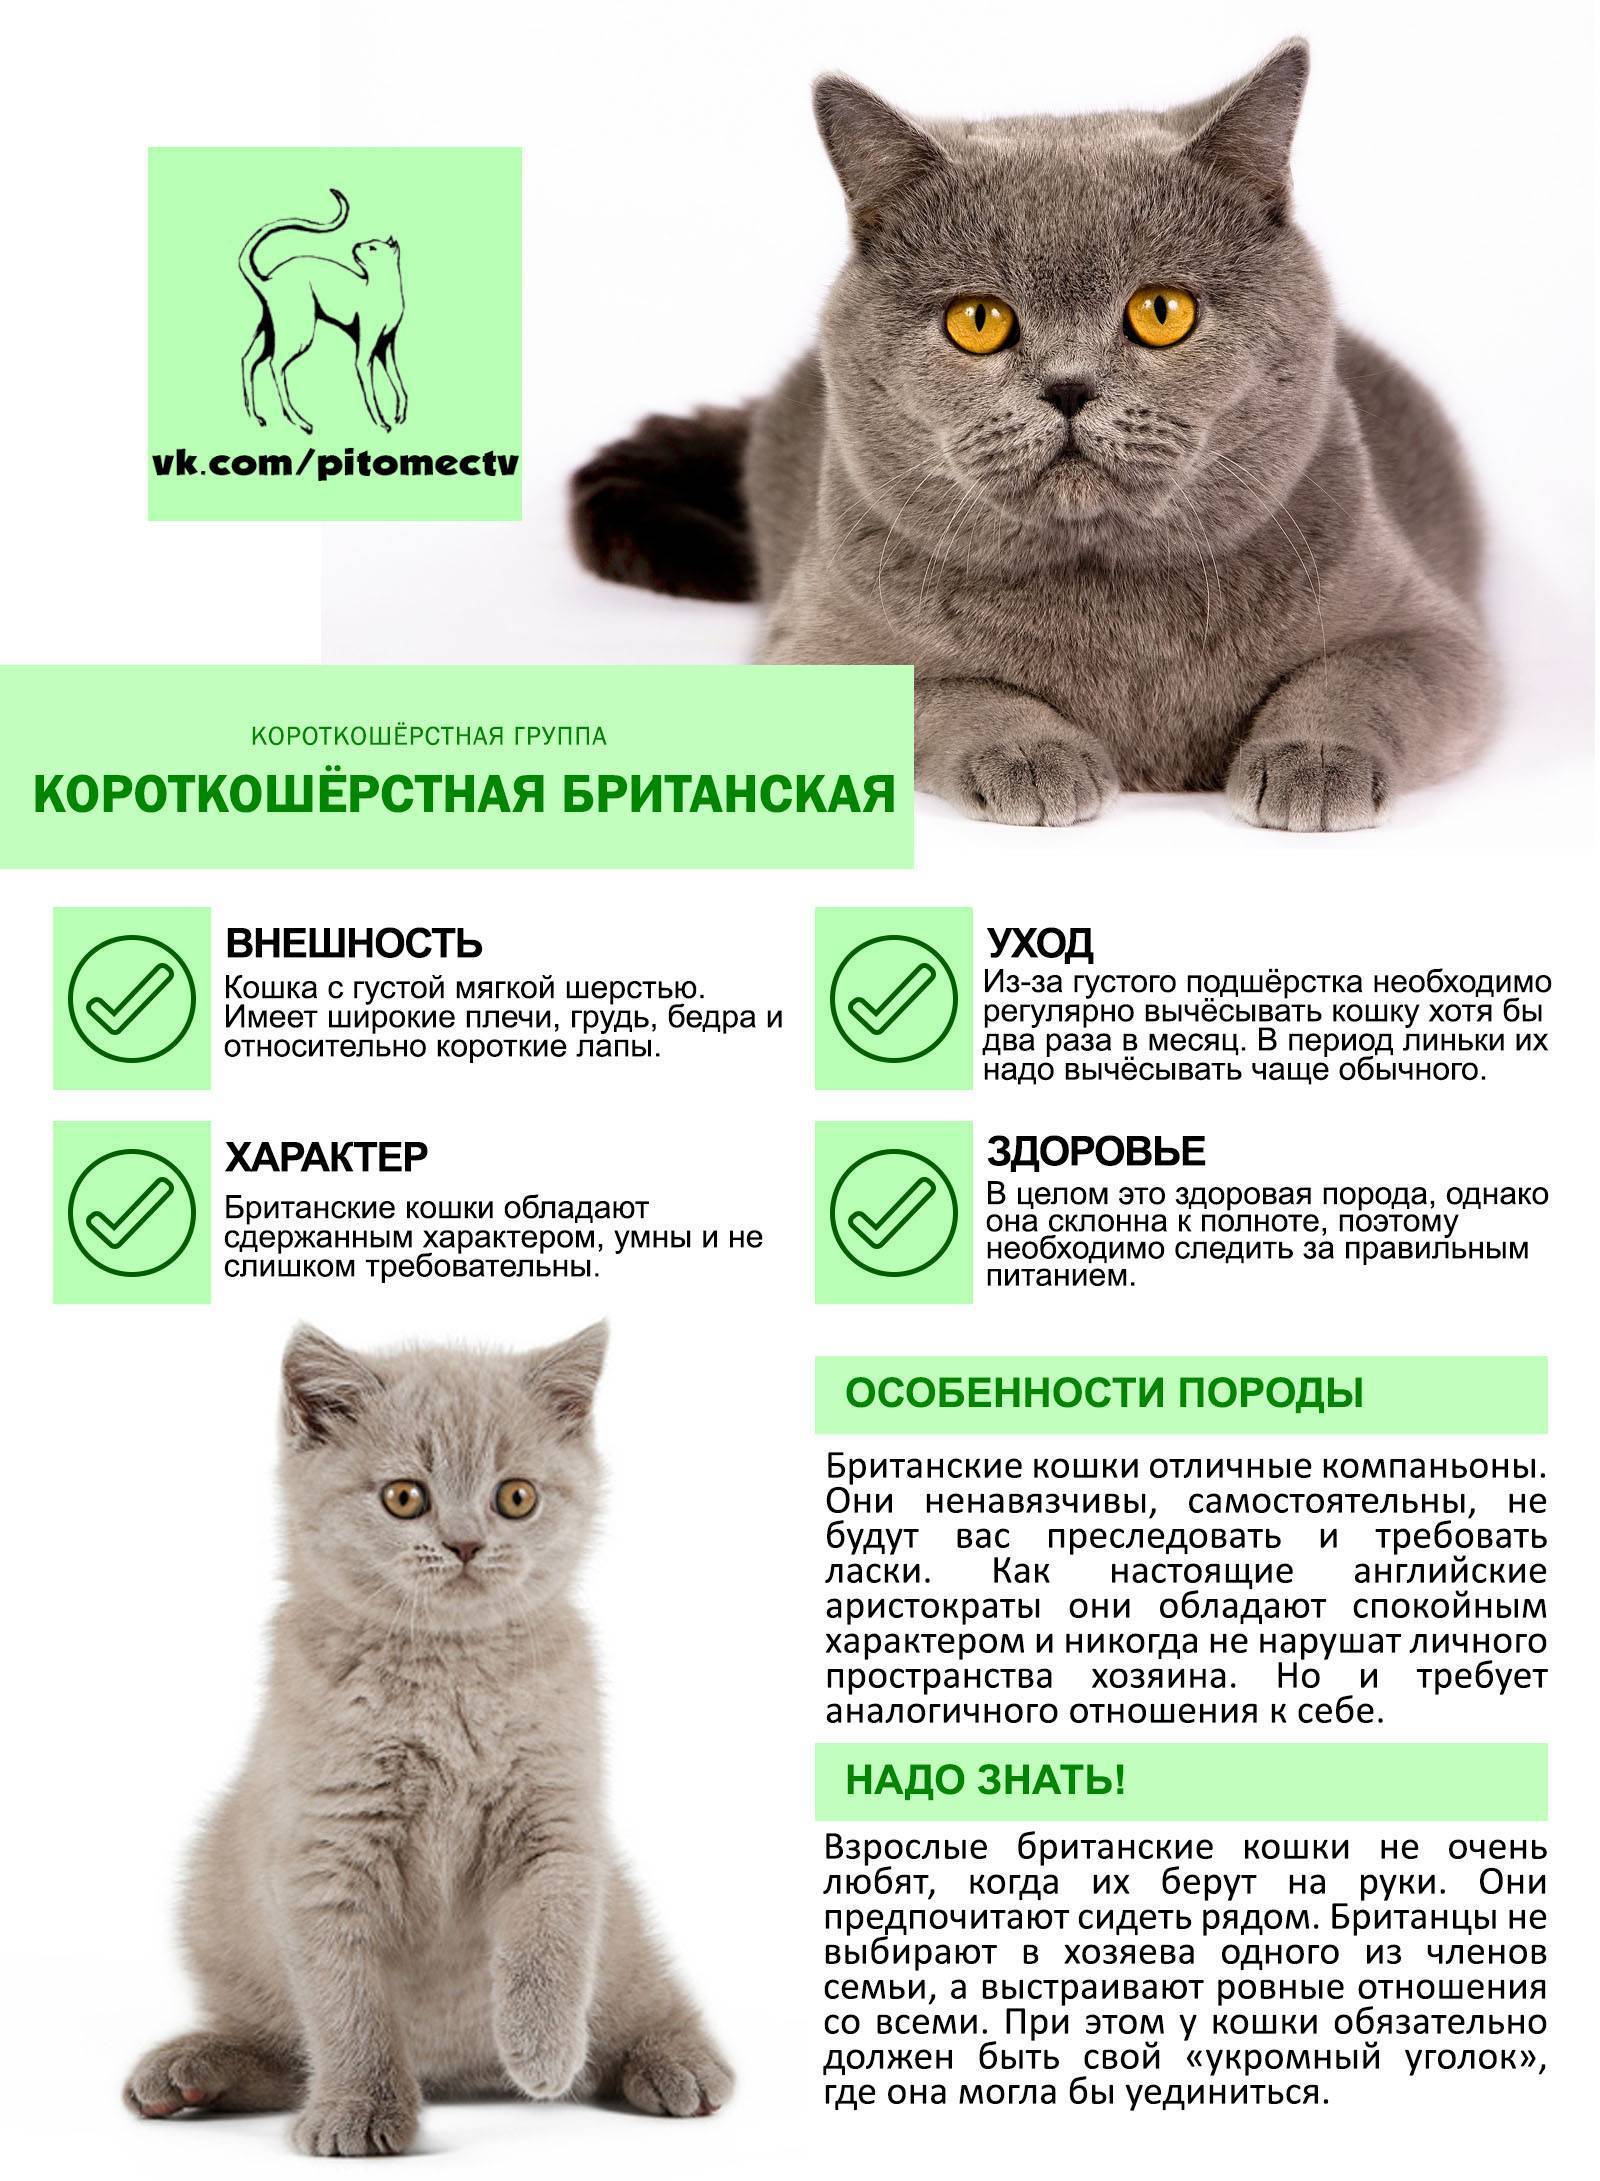 Описание вислоухой британской кошки, уход и кормление, характер породы